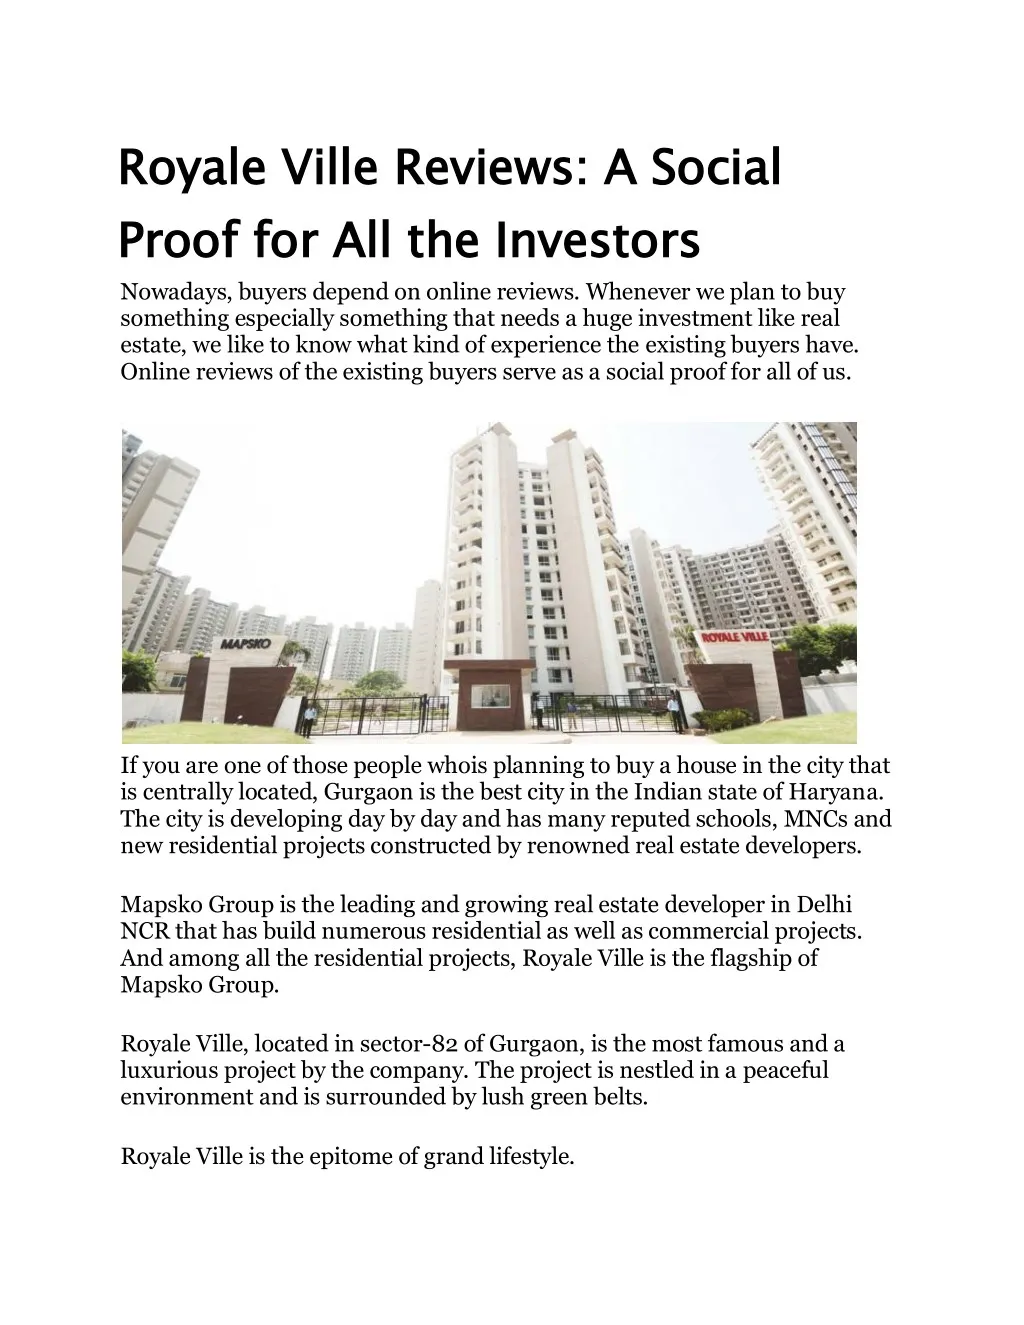 royale ville reviews a social proof